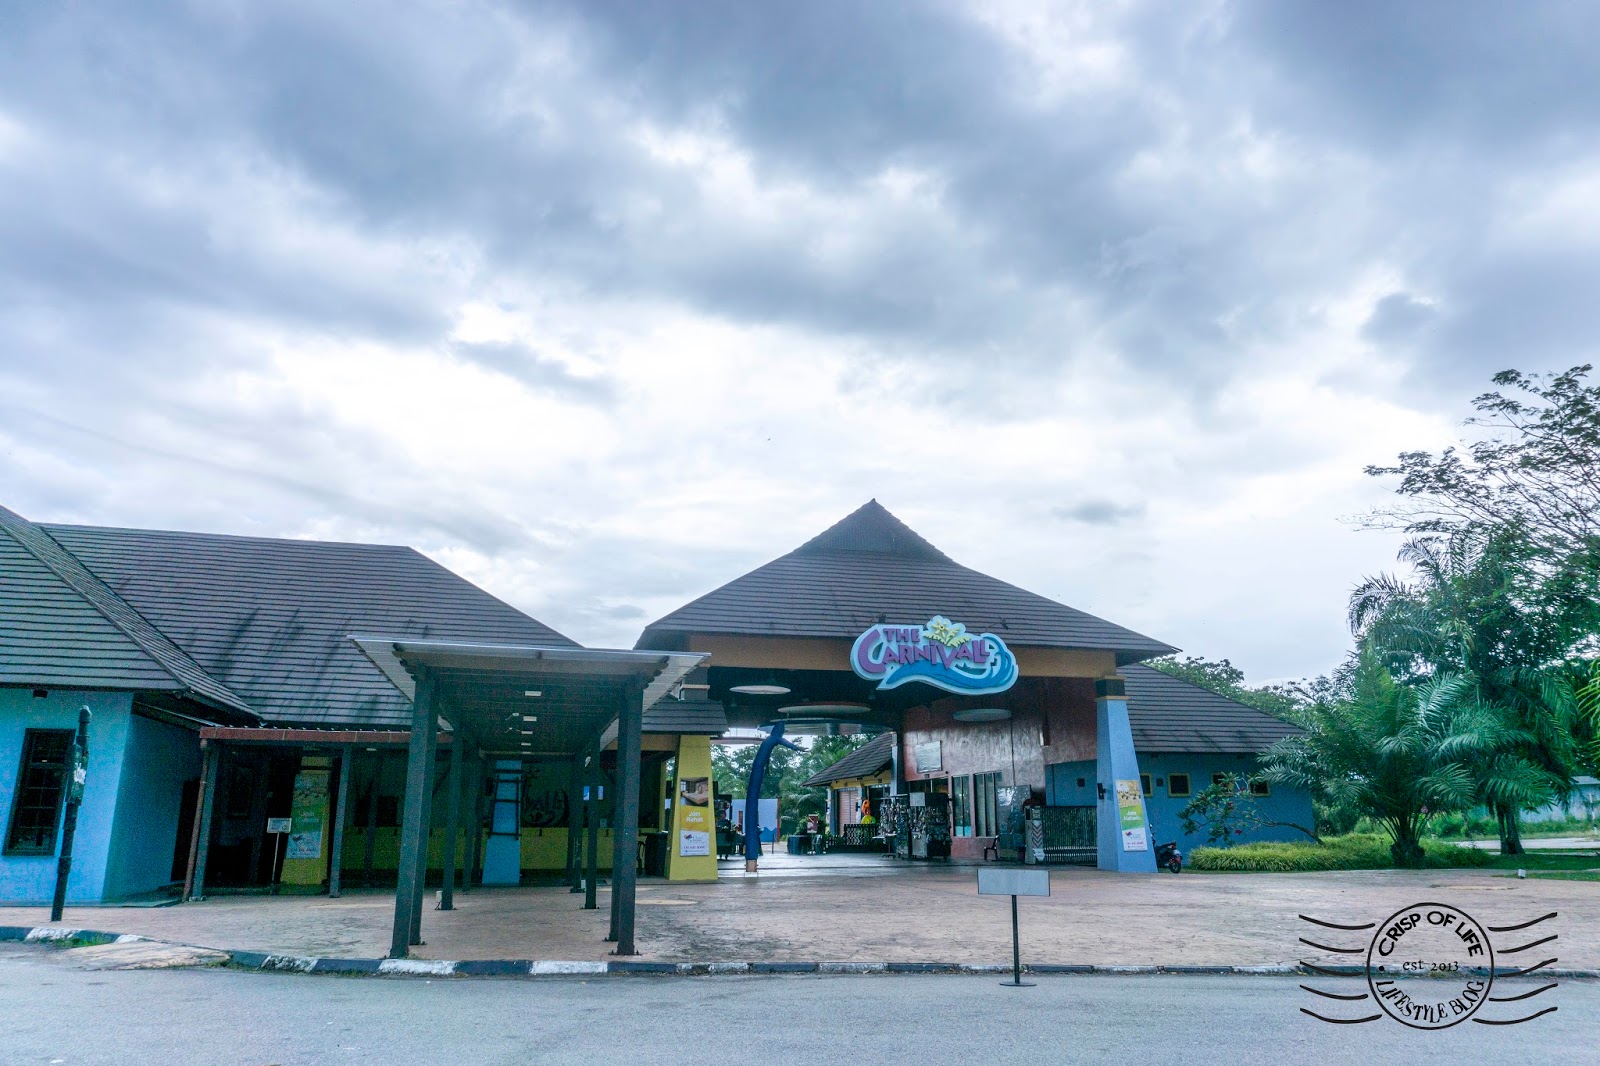 The Carnivall Waterpark Sungai Petani 